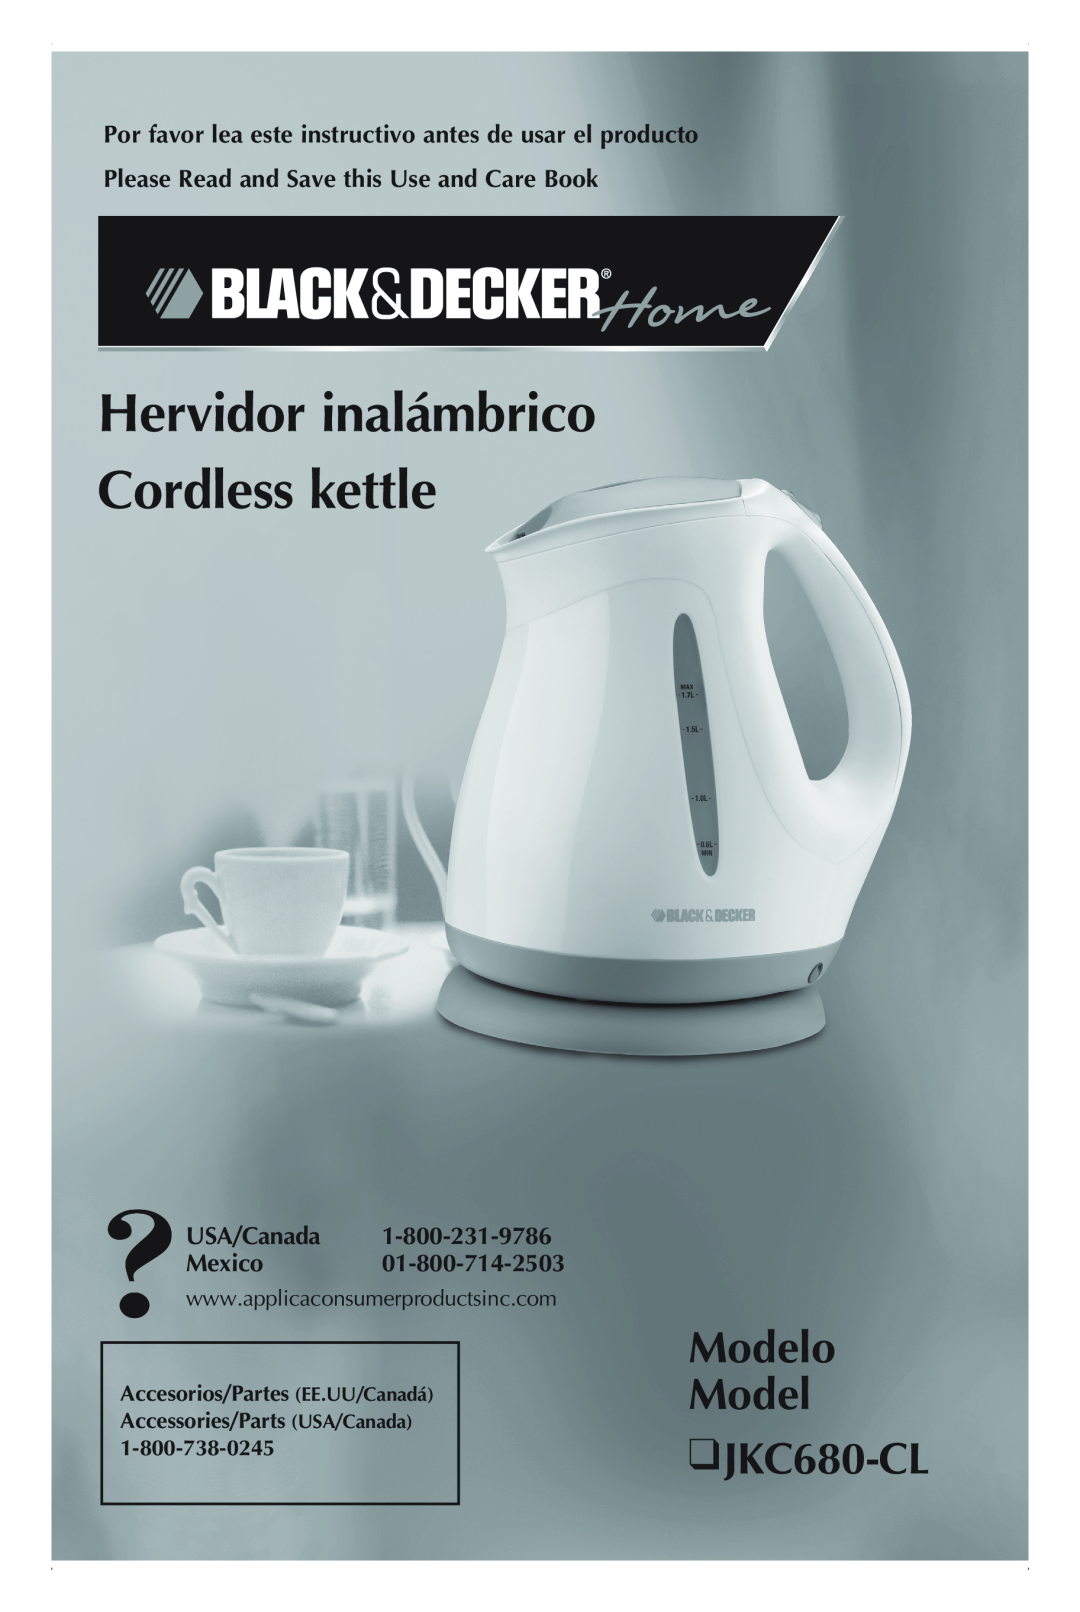 Black & Decker manual Modelo Model JKC680-CL, Hervidor inalámbrico Cordless kettle, USA/Canada Mexico 